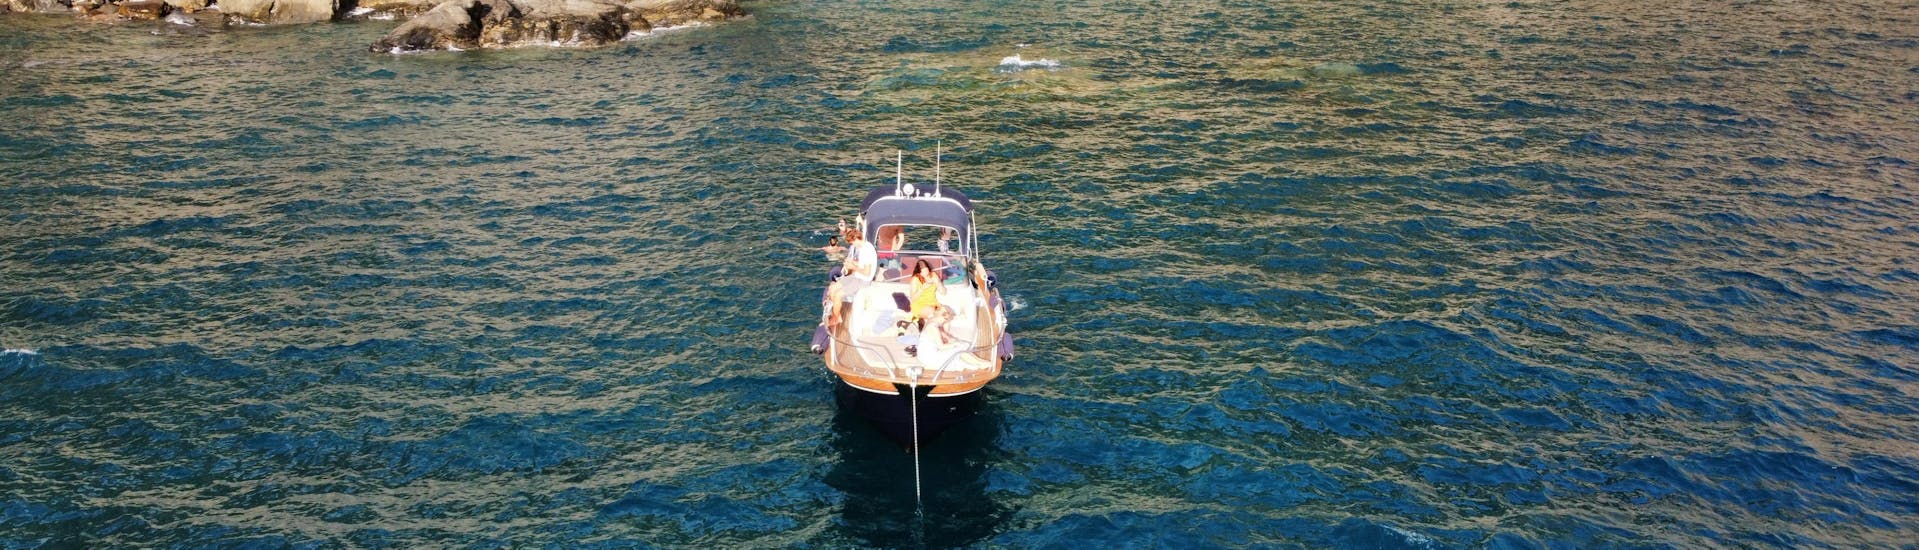 Paseo en barco privado desde Levanto a Cinque Terre y Porto Venere con almuerzo.